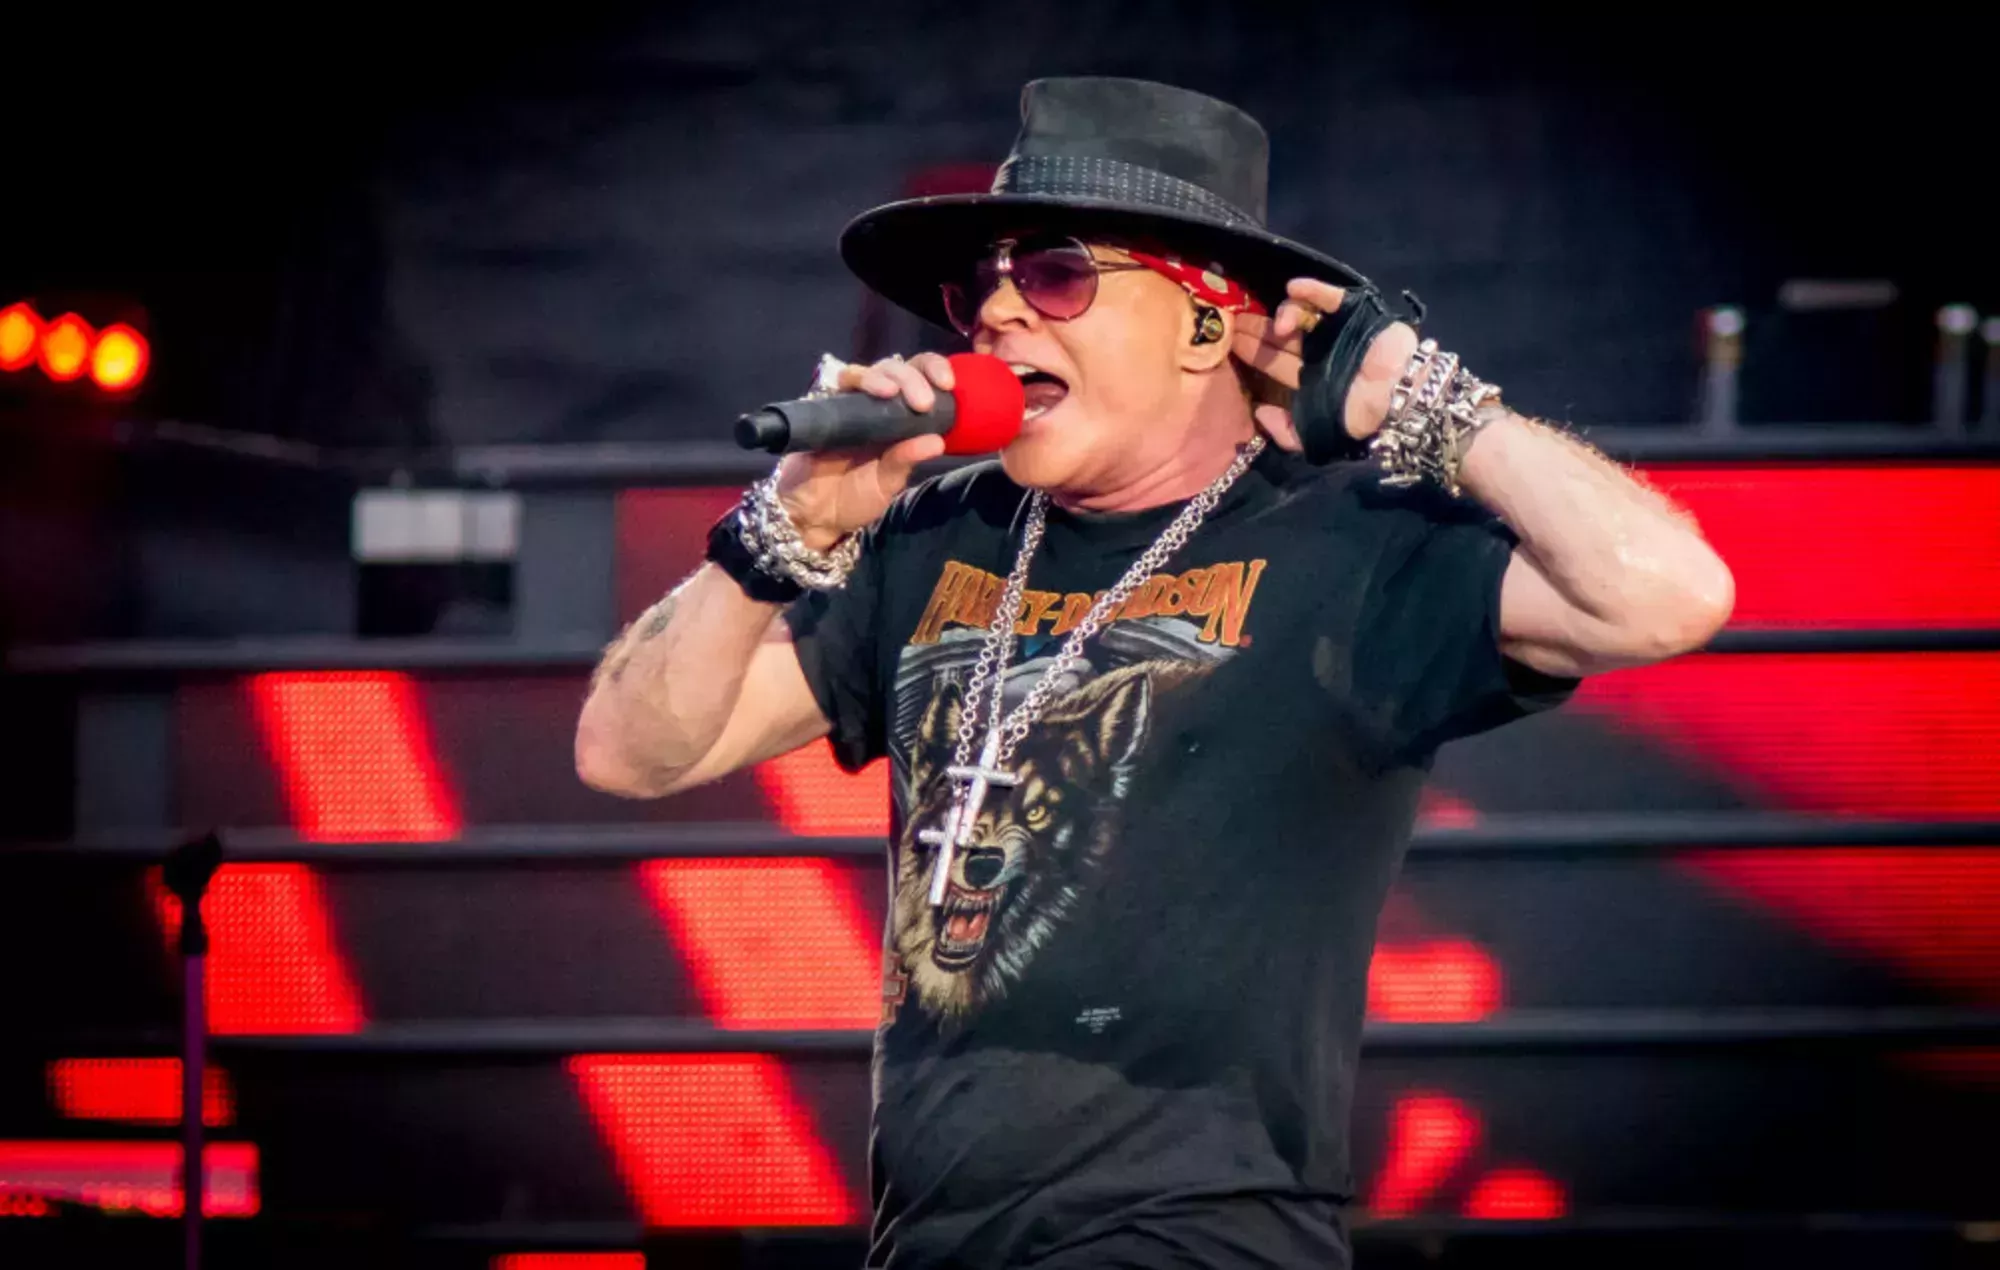 Axl Rose, de Guns N' Roses, comparte información sobre su estado de salud tras posponer un concierto